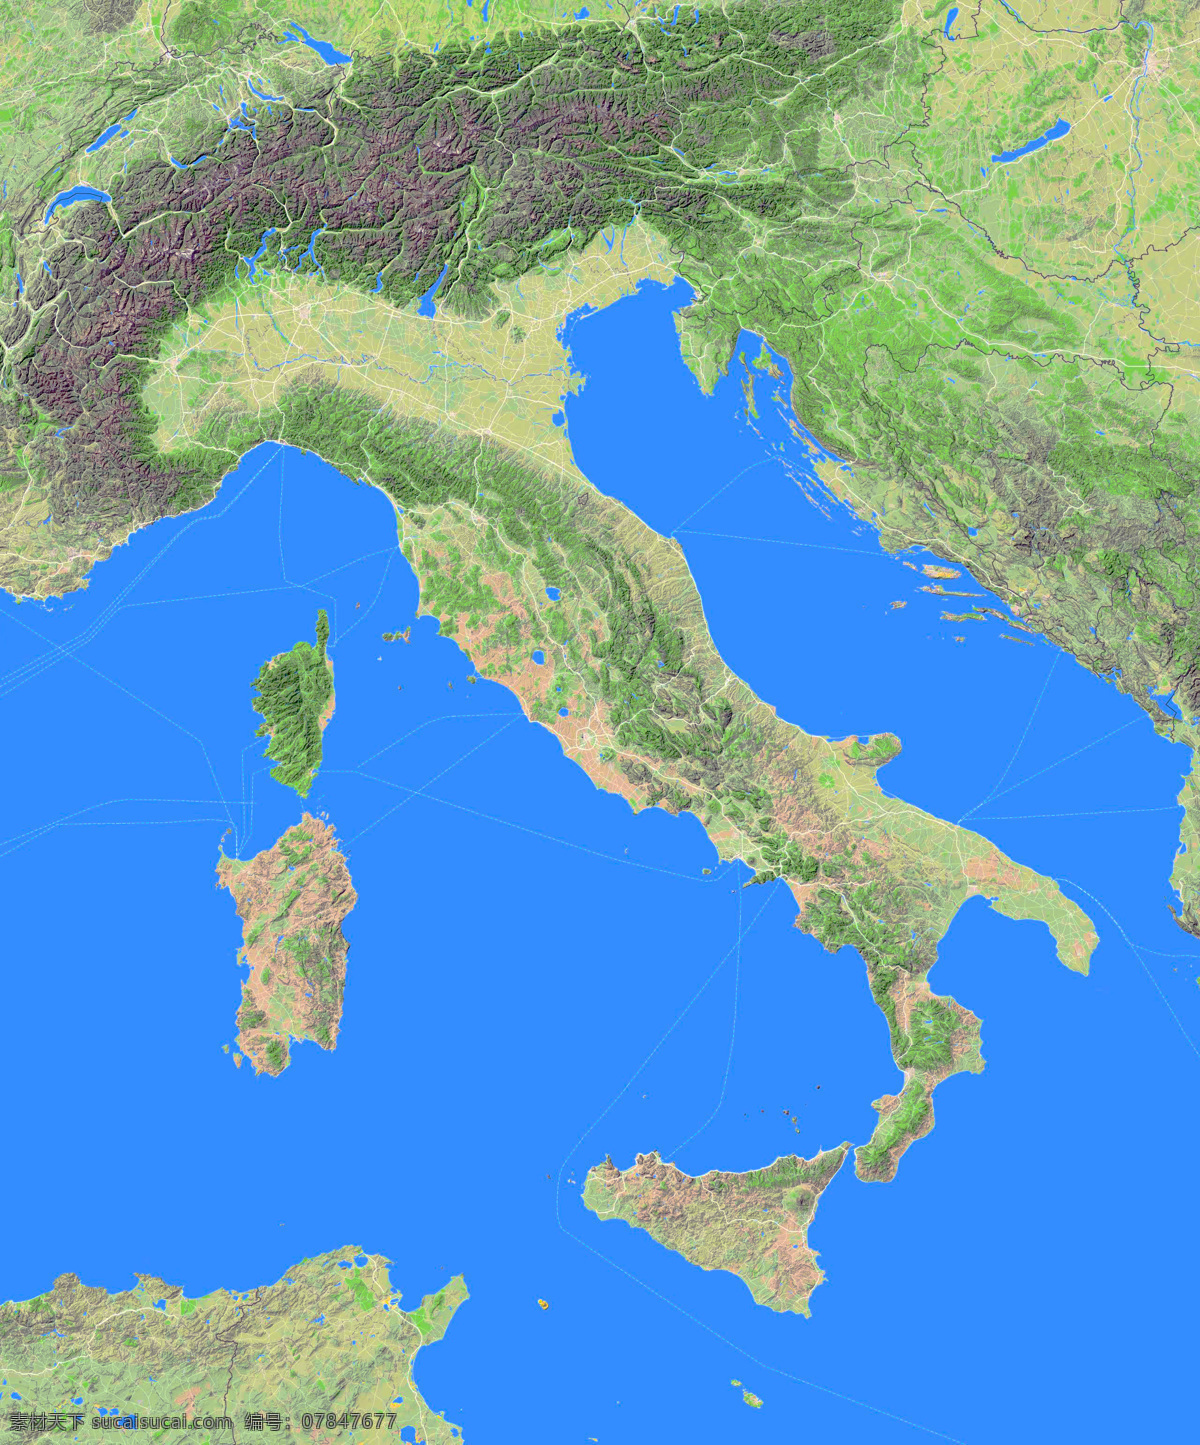 意大利地形图 意大利 地形图 欧洲 上帝之眼 卫星图 俯视图 nasa 地中海 海洋 山地 西西里岛 撒丁岛 阿尔卑斯山 南欧 东欧 地球 自然景观 自然风景